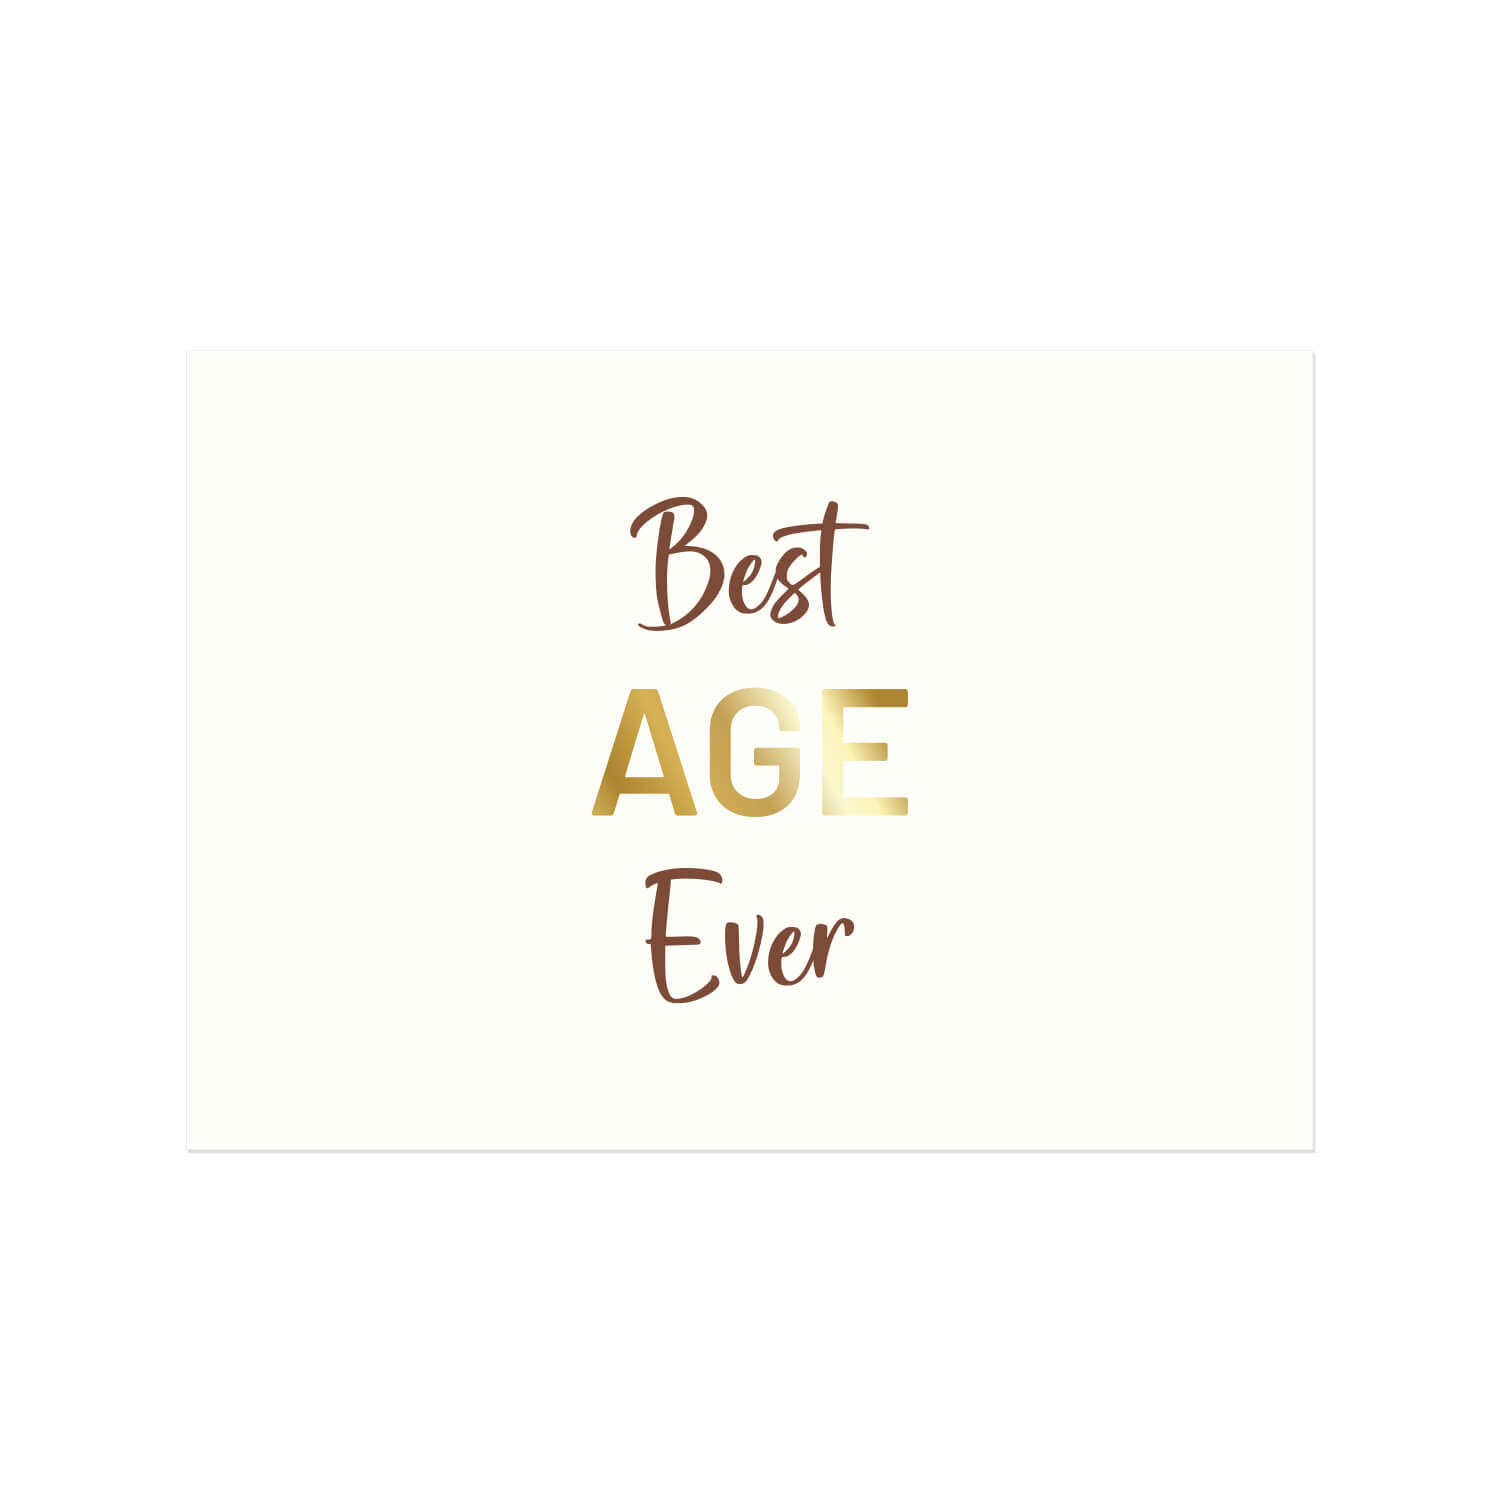 Yaldızlı – Best Age Ever Motto Kartı